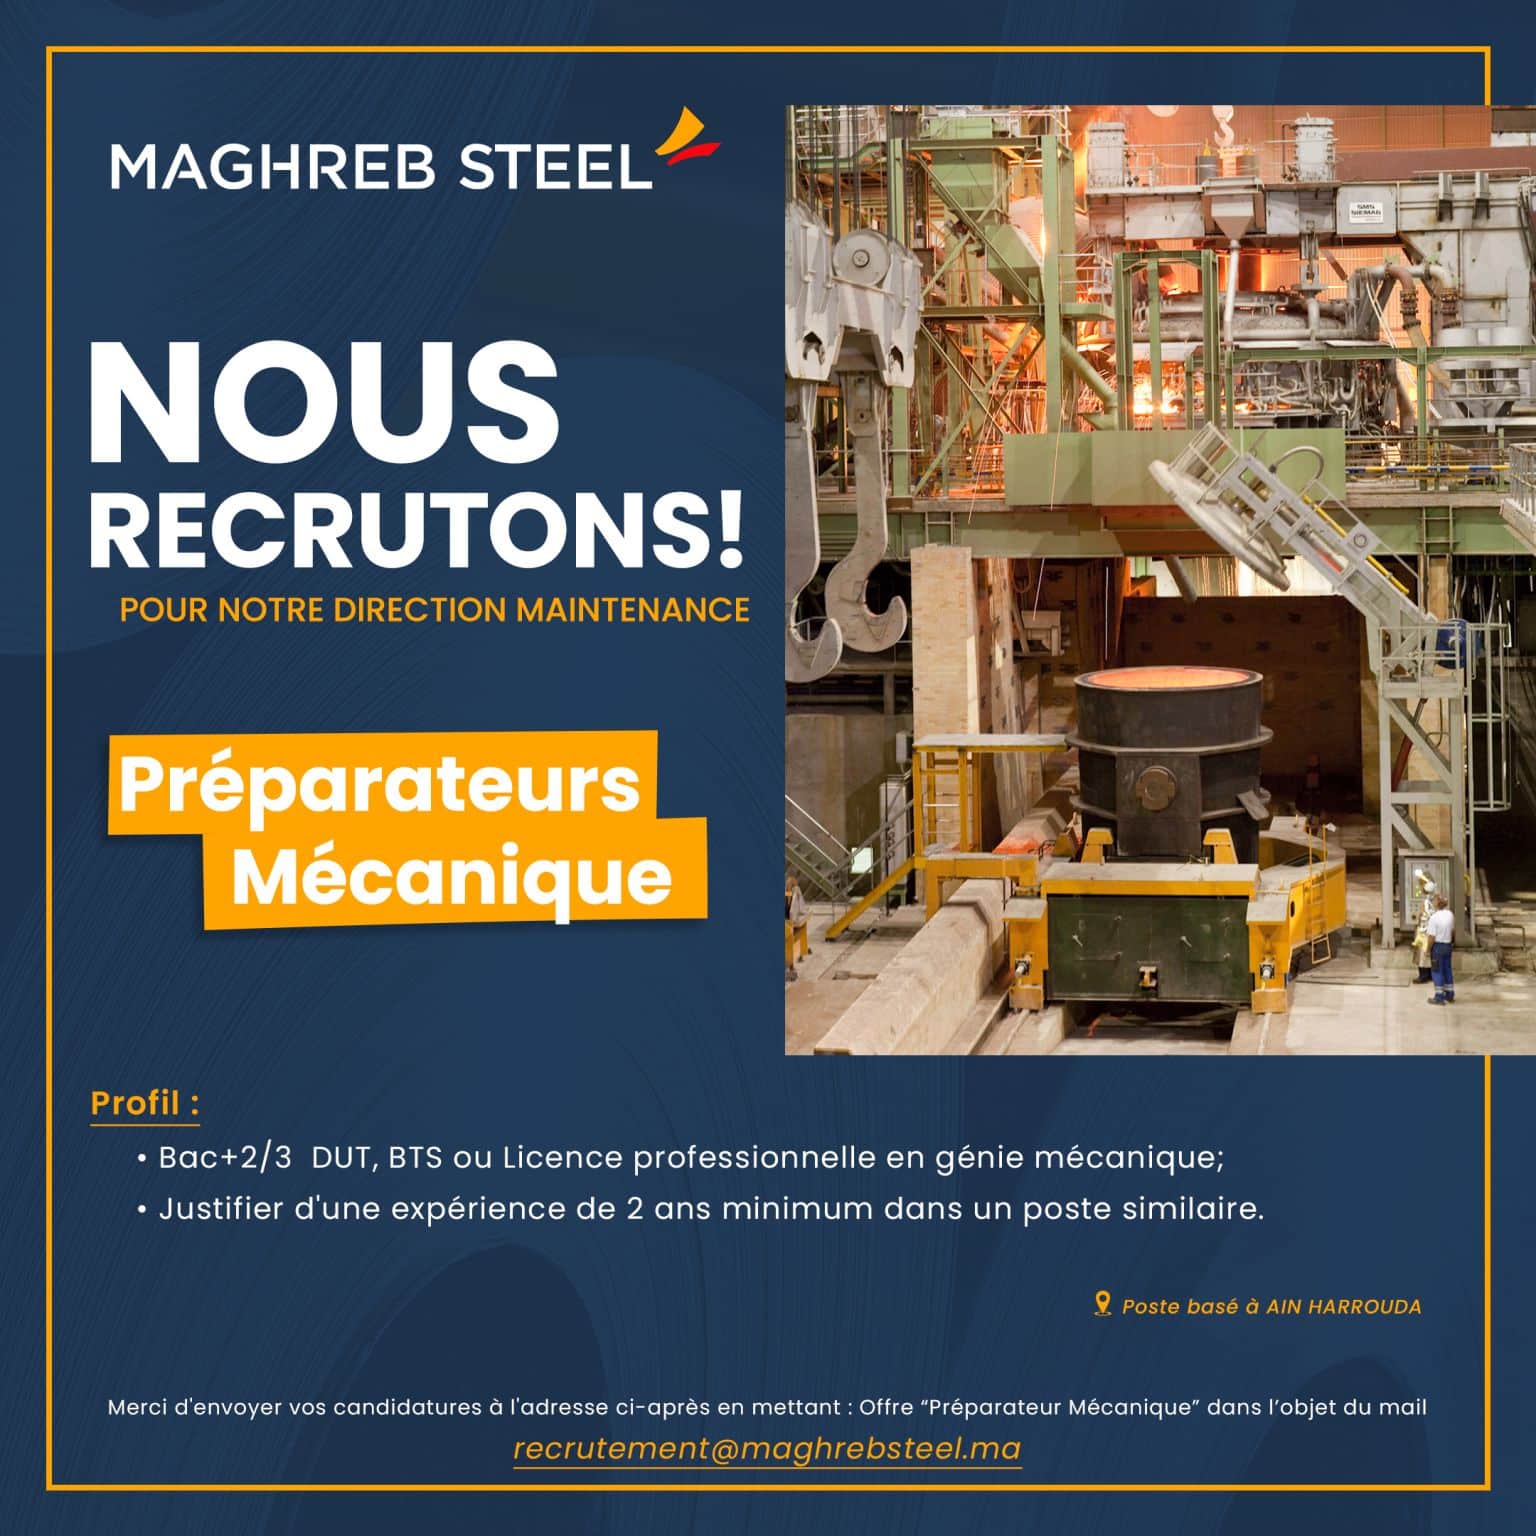 Maghreb Steel recrute des préparateurs mécanique